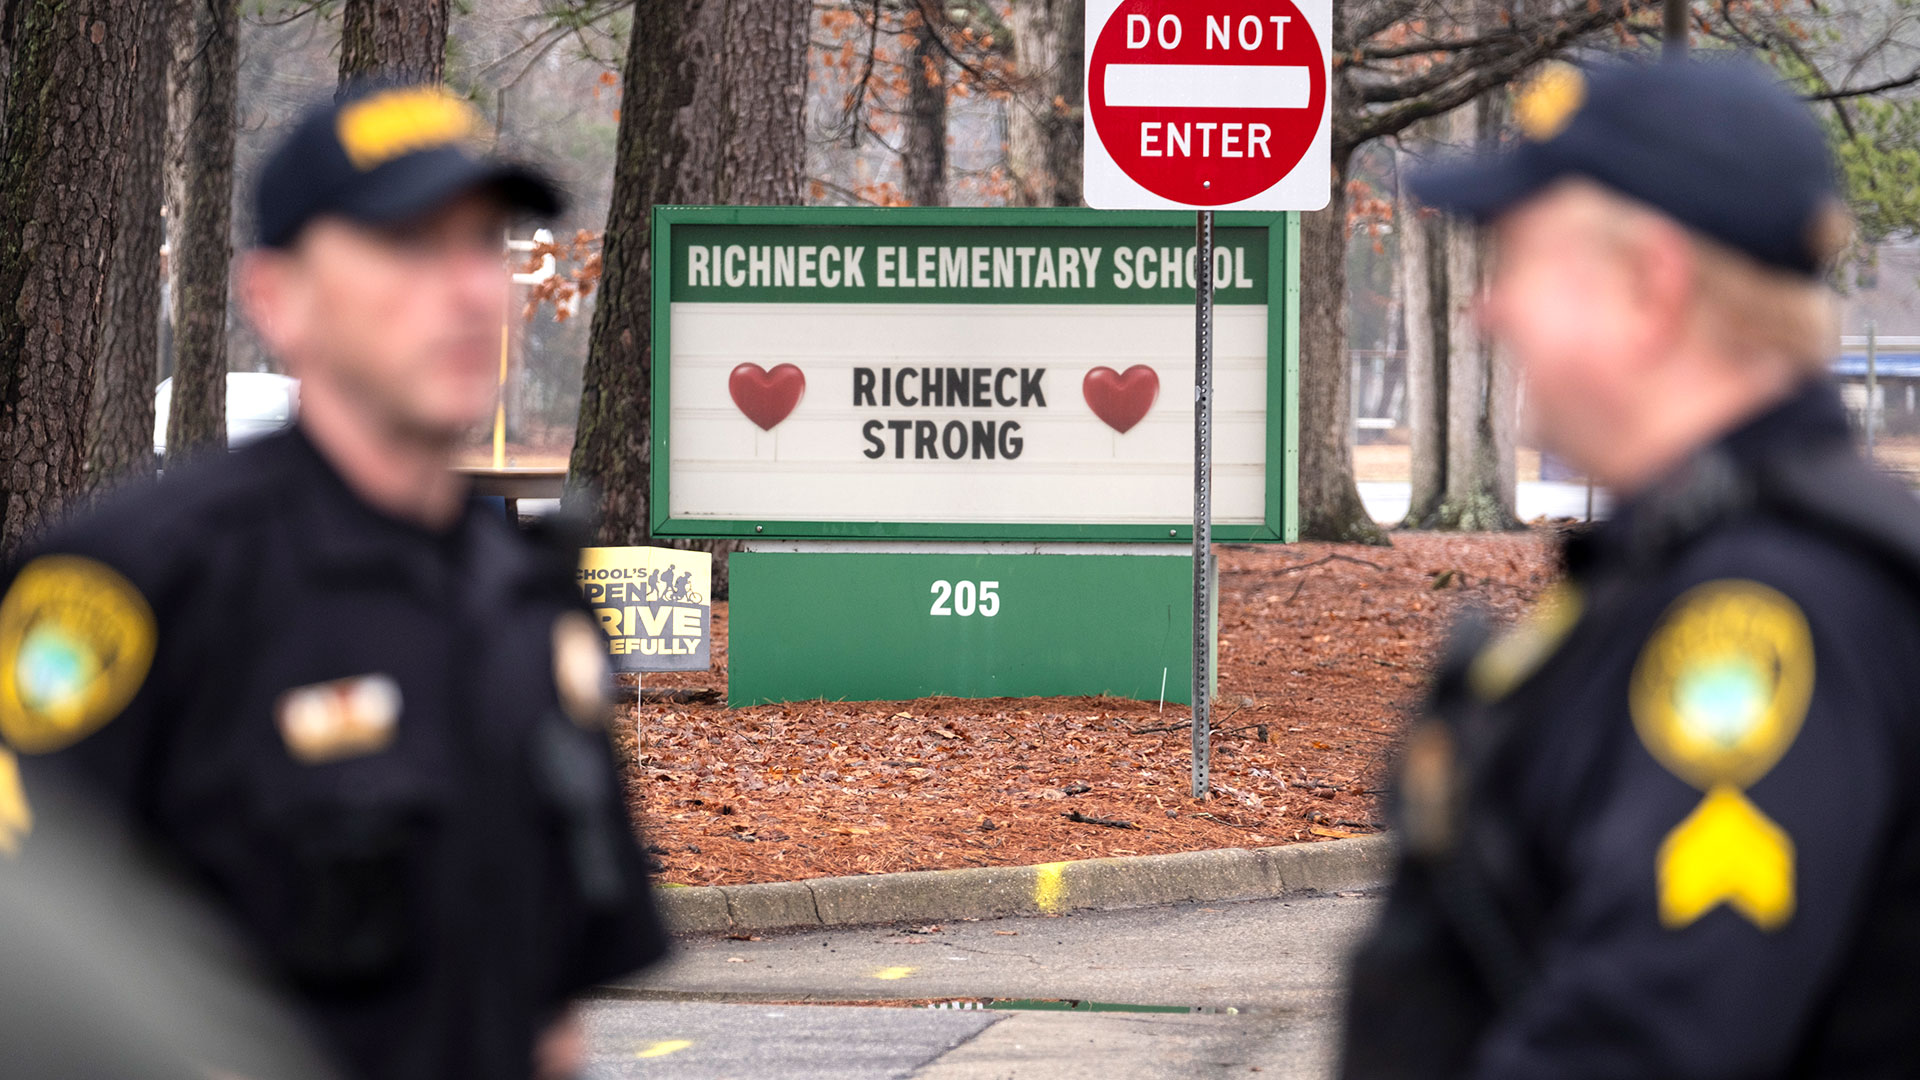 ARCHIVO - La policía observa cómo los estudiantes regresan a la escuela primaria Richneck en Newport News, Virginia, el 30 de enero de 2023. (Billy Schuerman/The Virginian-Pilot vía AP, Archivo)

